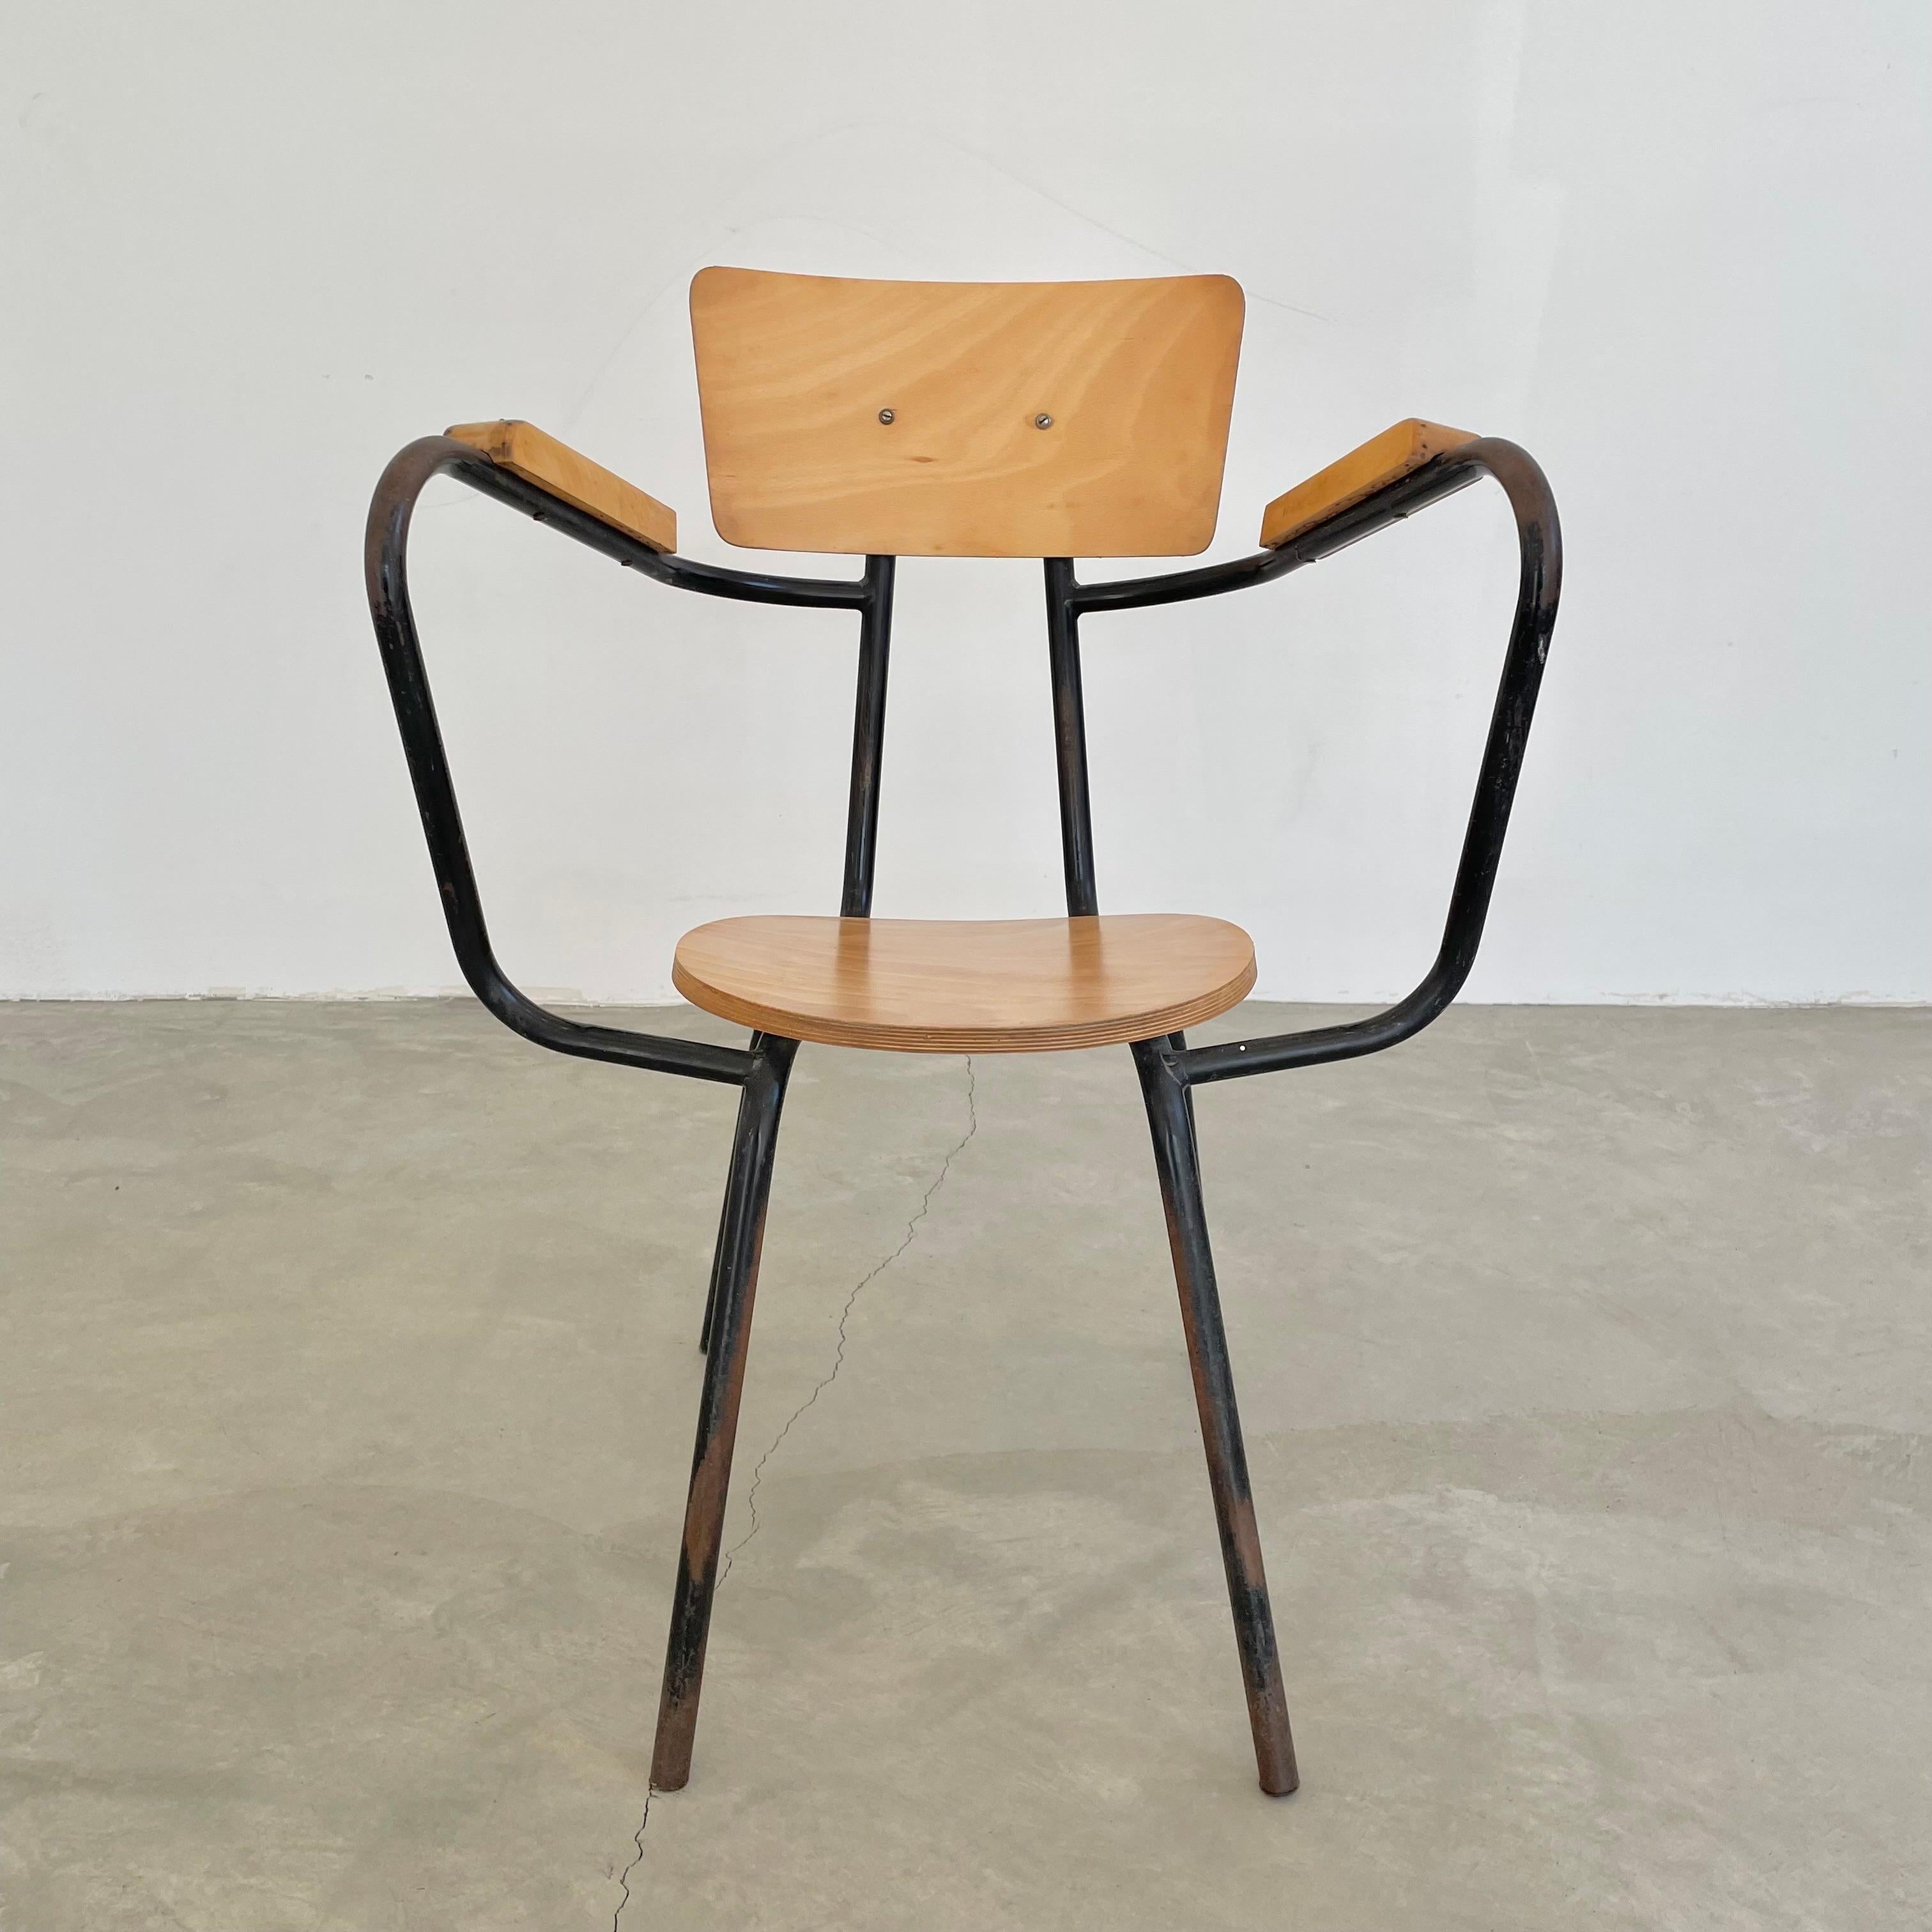 Wunderschöner Stuhl des französischen Designers Jacques Hitier. Schwarzes Metallrohrgestell mit Sitz, Rückenlehne und Armlehnen aus Ahornholz. Der Stuhl zeichnet sich durch ein schönes Design der Armlehnen mit Flügelschlaufen aus, und fast jedes